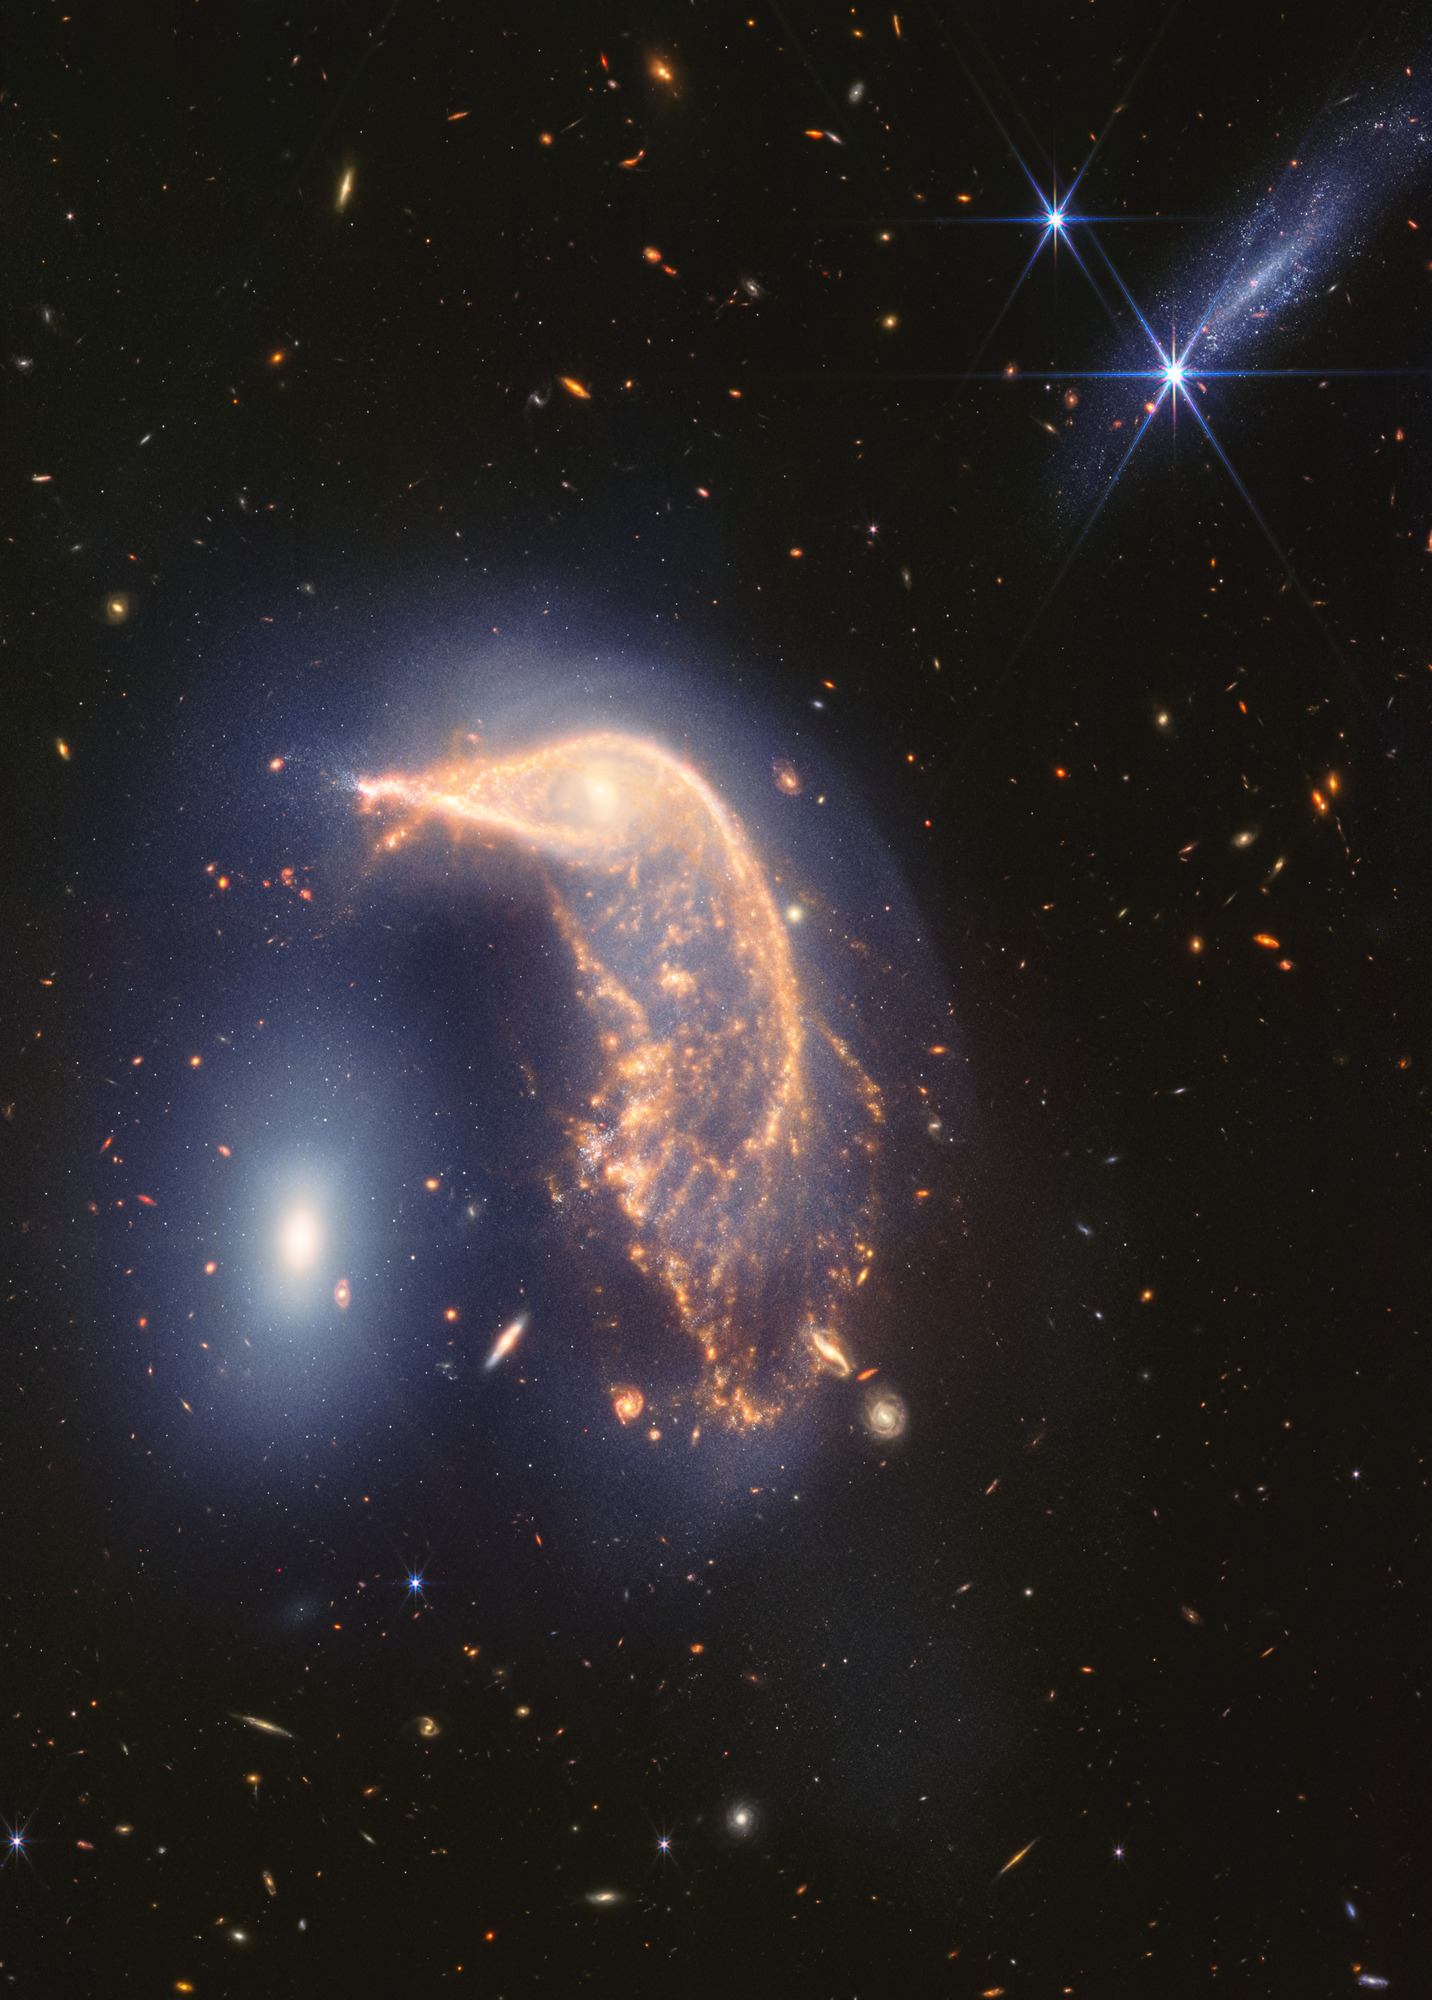 ¡Esta "fiesta de pingüinos" es ruidosa! La galaxia espiral distorsionada en el centro, el Pingüino, y la galaxia elíptica compacta a la izquierda, el Huevo, están encerrados en un abrazo activo. Una nueva imagen del infrarrojo cercano y medio del telescopio espacial James Webb, tomada para conmemorar su segundo año de ciencia, muestra que su interacción está marcada por un tenue resplandor azul en forma de U invertida.